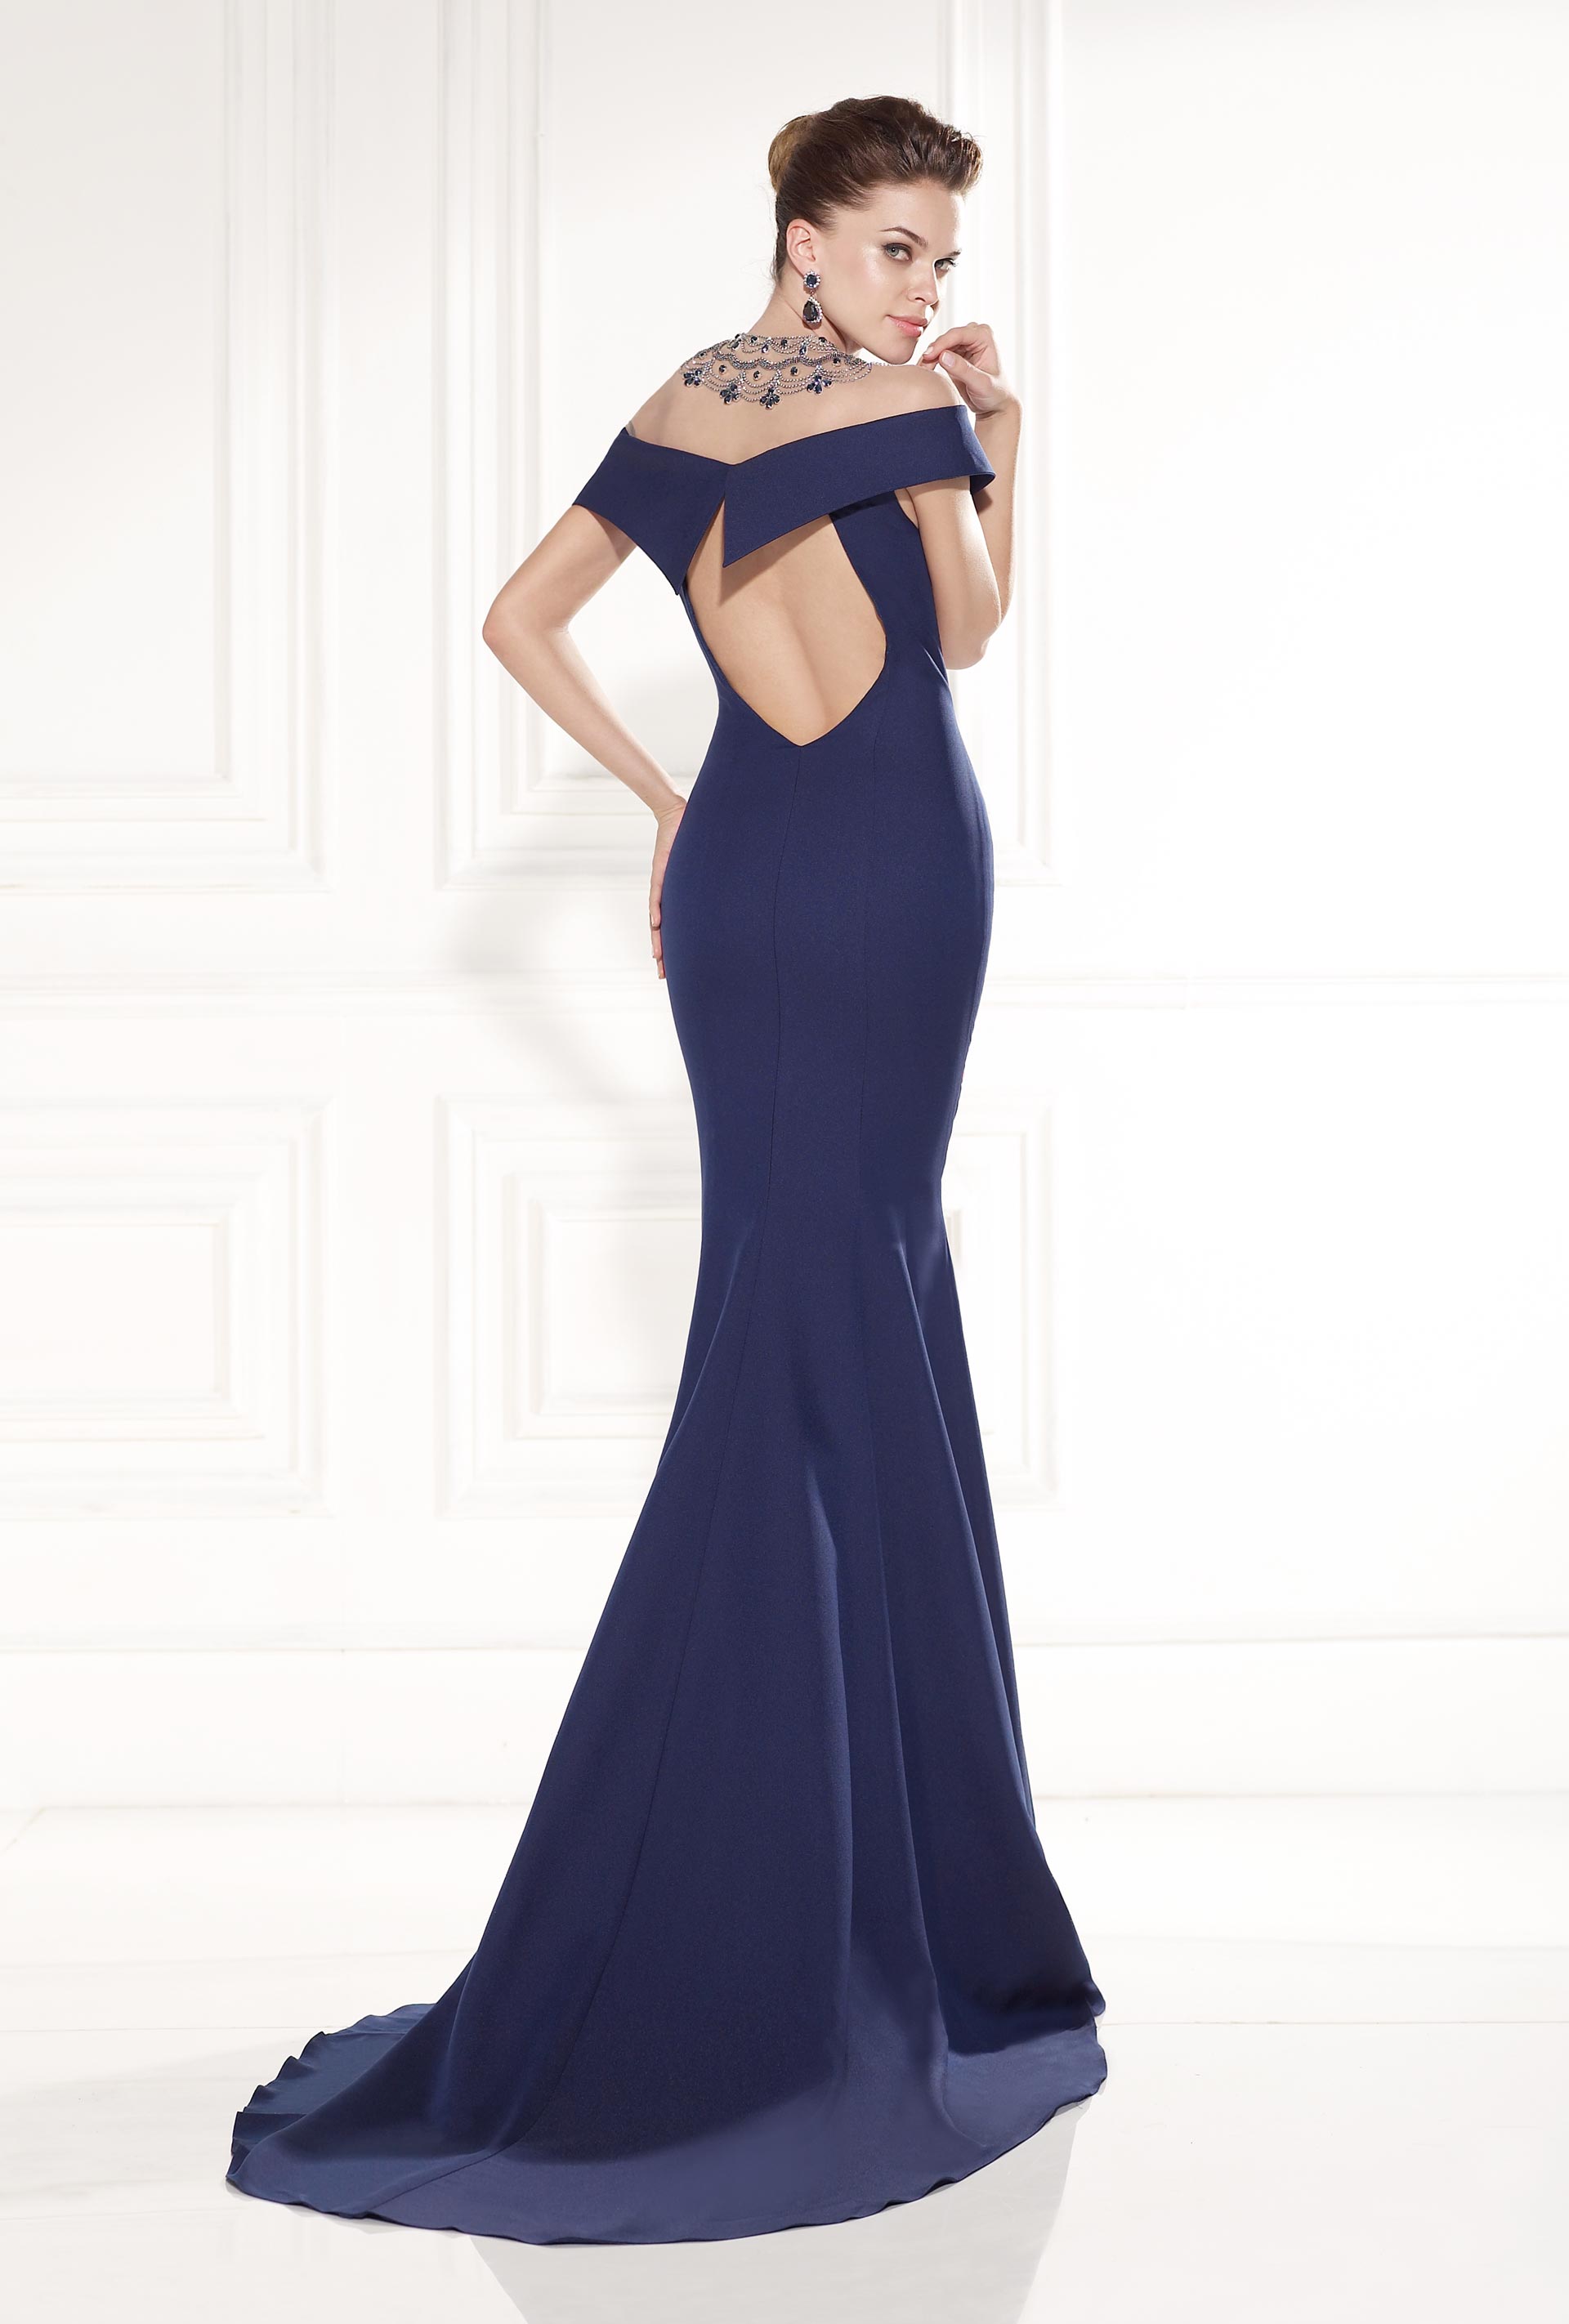 Evening Dresses by Turkish Designer Tarik Ediz - fashionsy.com